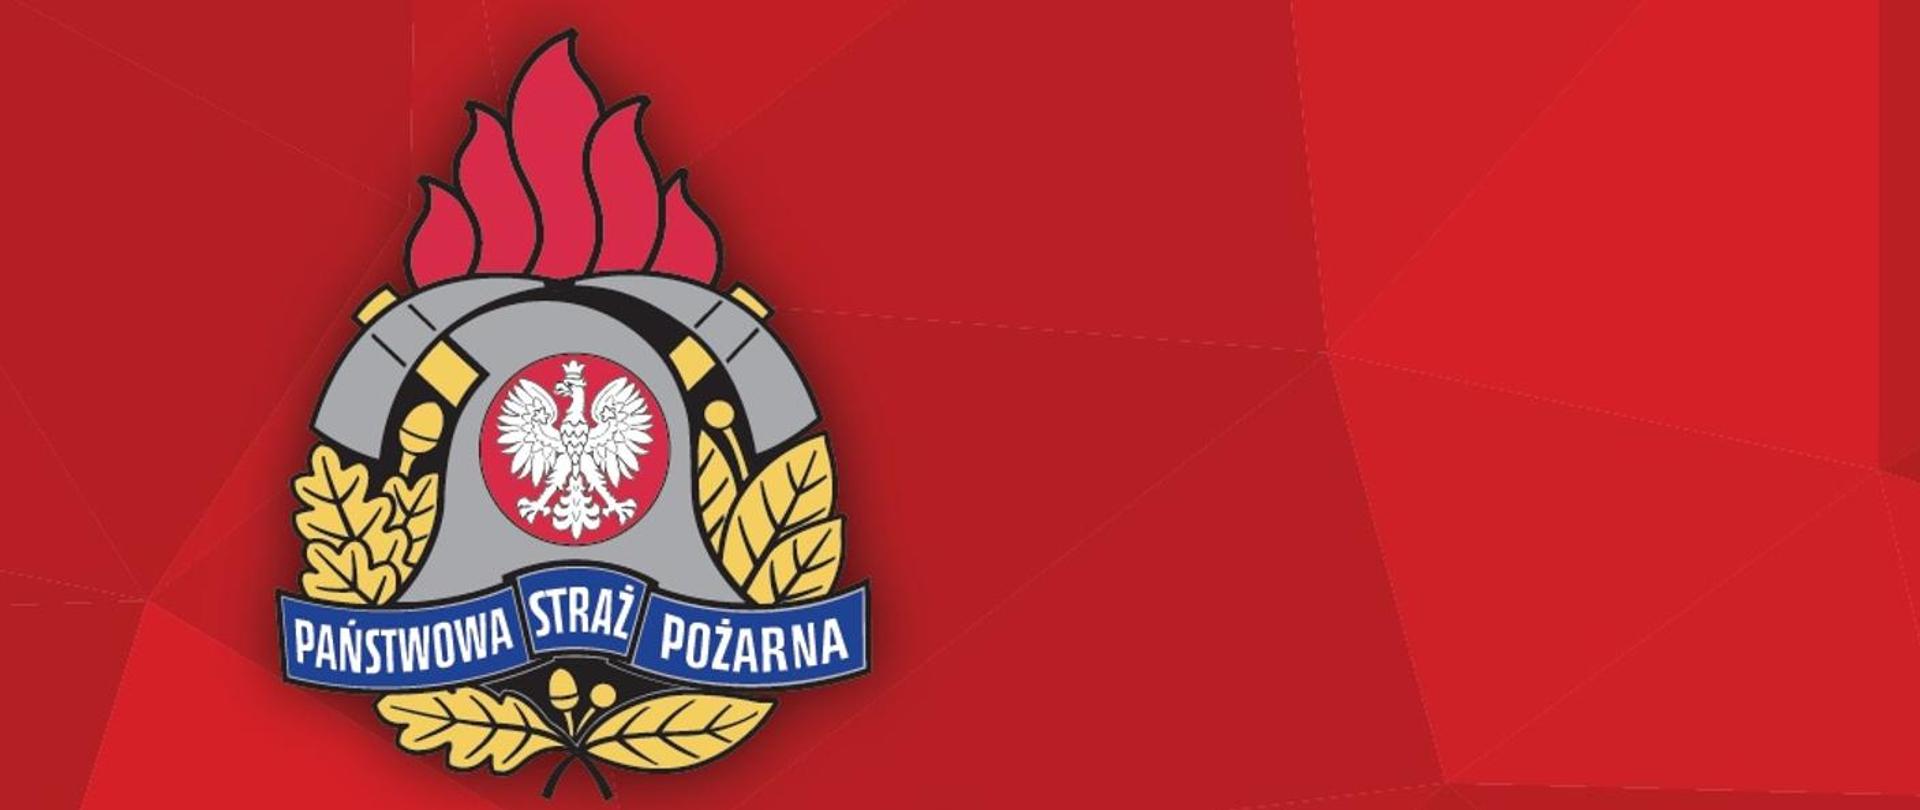 Logo Państwowej Straży Pożarnej na czerwonym tle